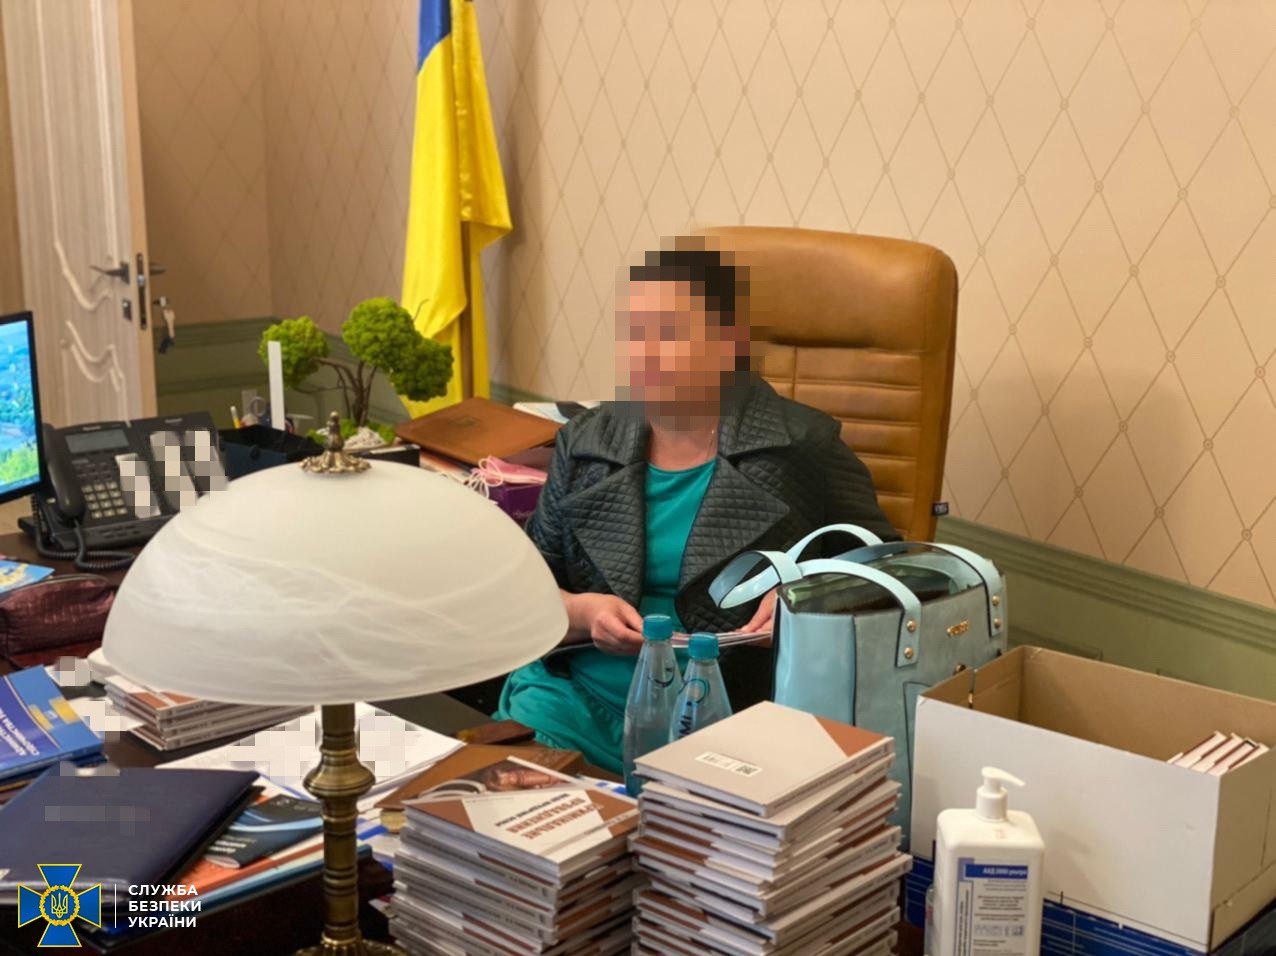 Глава Харьковского окружного административного суда передала взятку судье за принятие «правильного» решения — СБУ